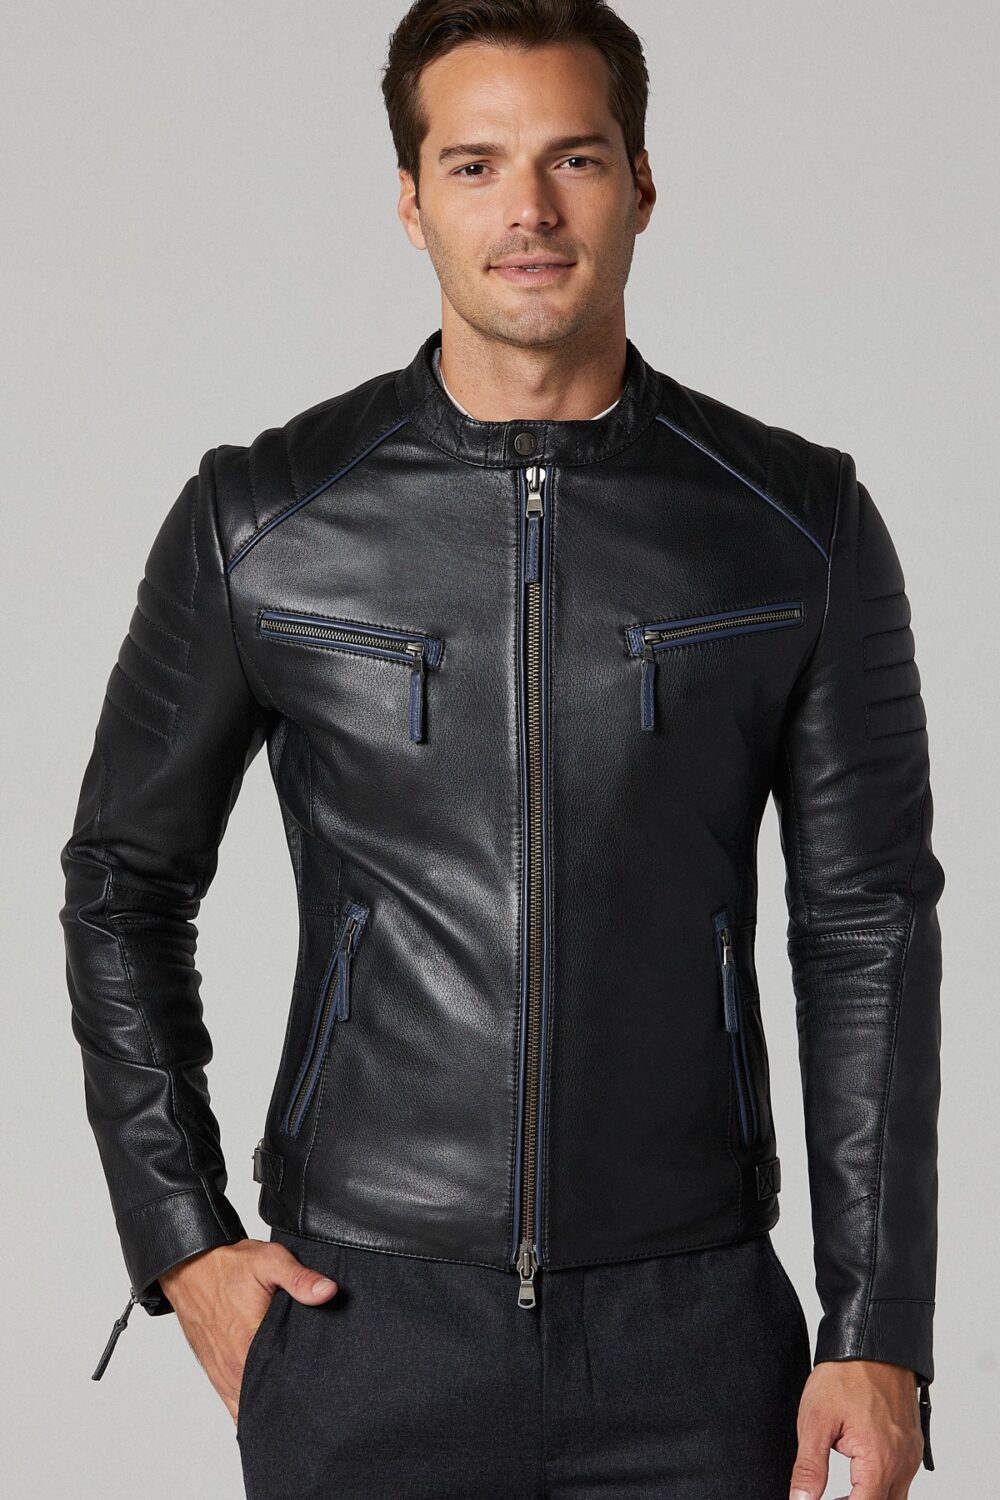 Dazzling Black Mens Sport Leather Jacket